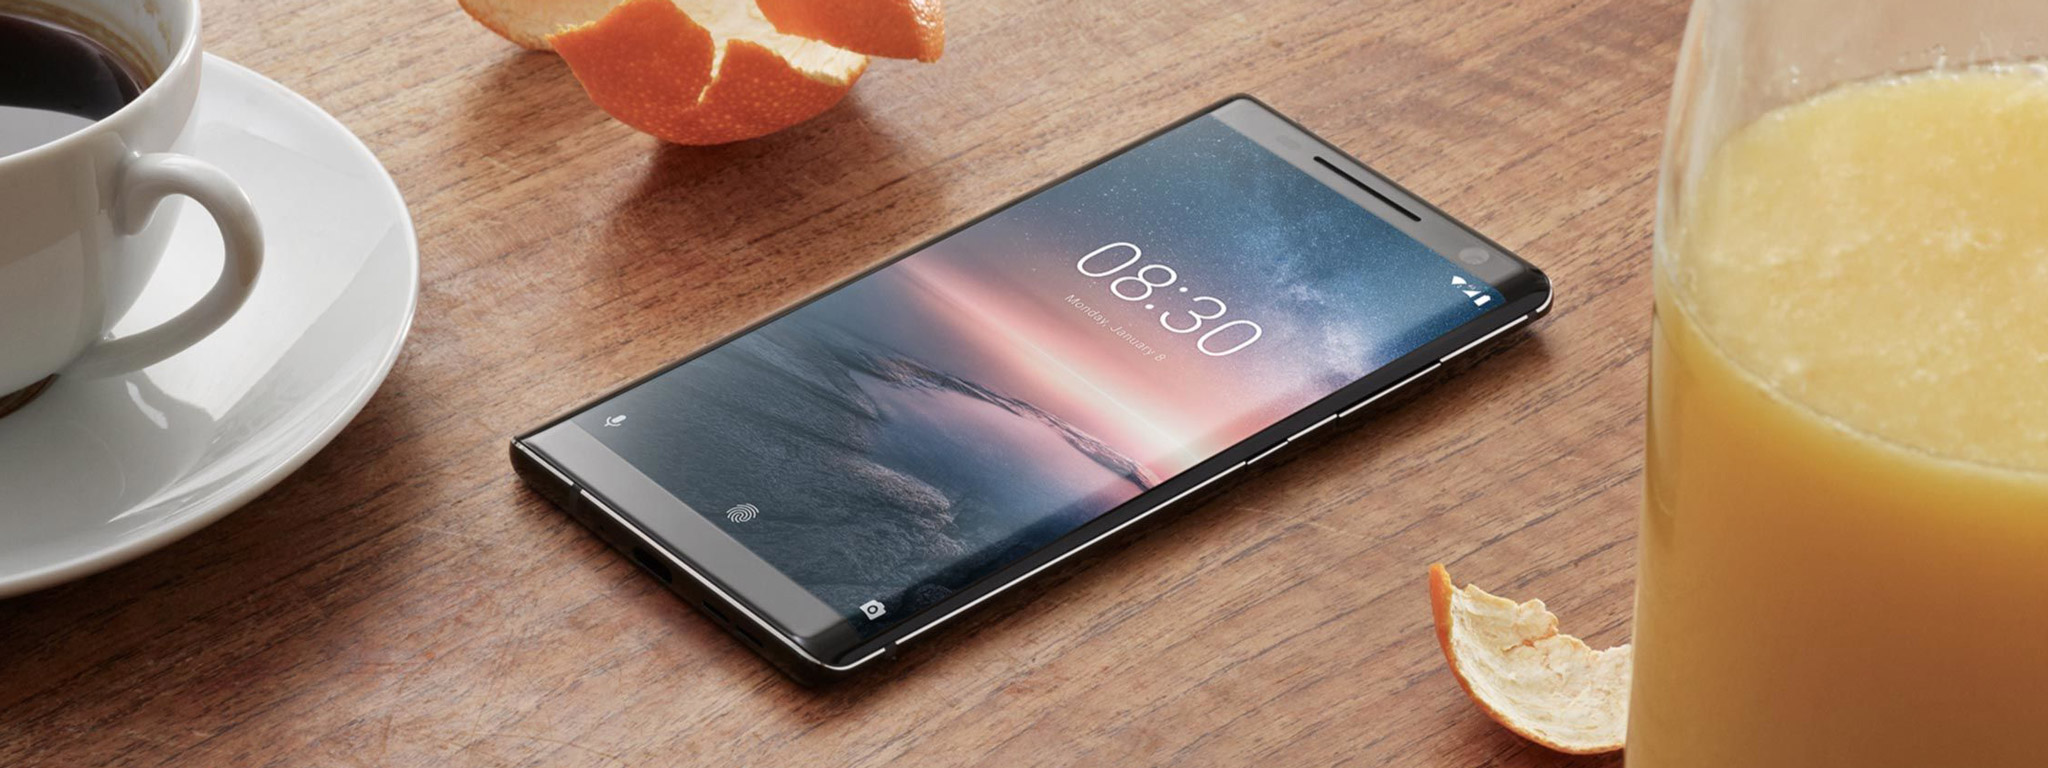 Nokia 9 / 8 Pro sẽ có thiết kế tương tự Nokia 8 Sirocco, có thể sẽ xuất hiện tai thỏ?